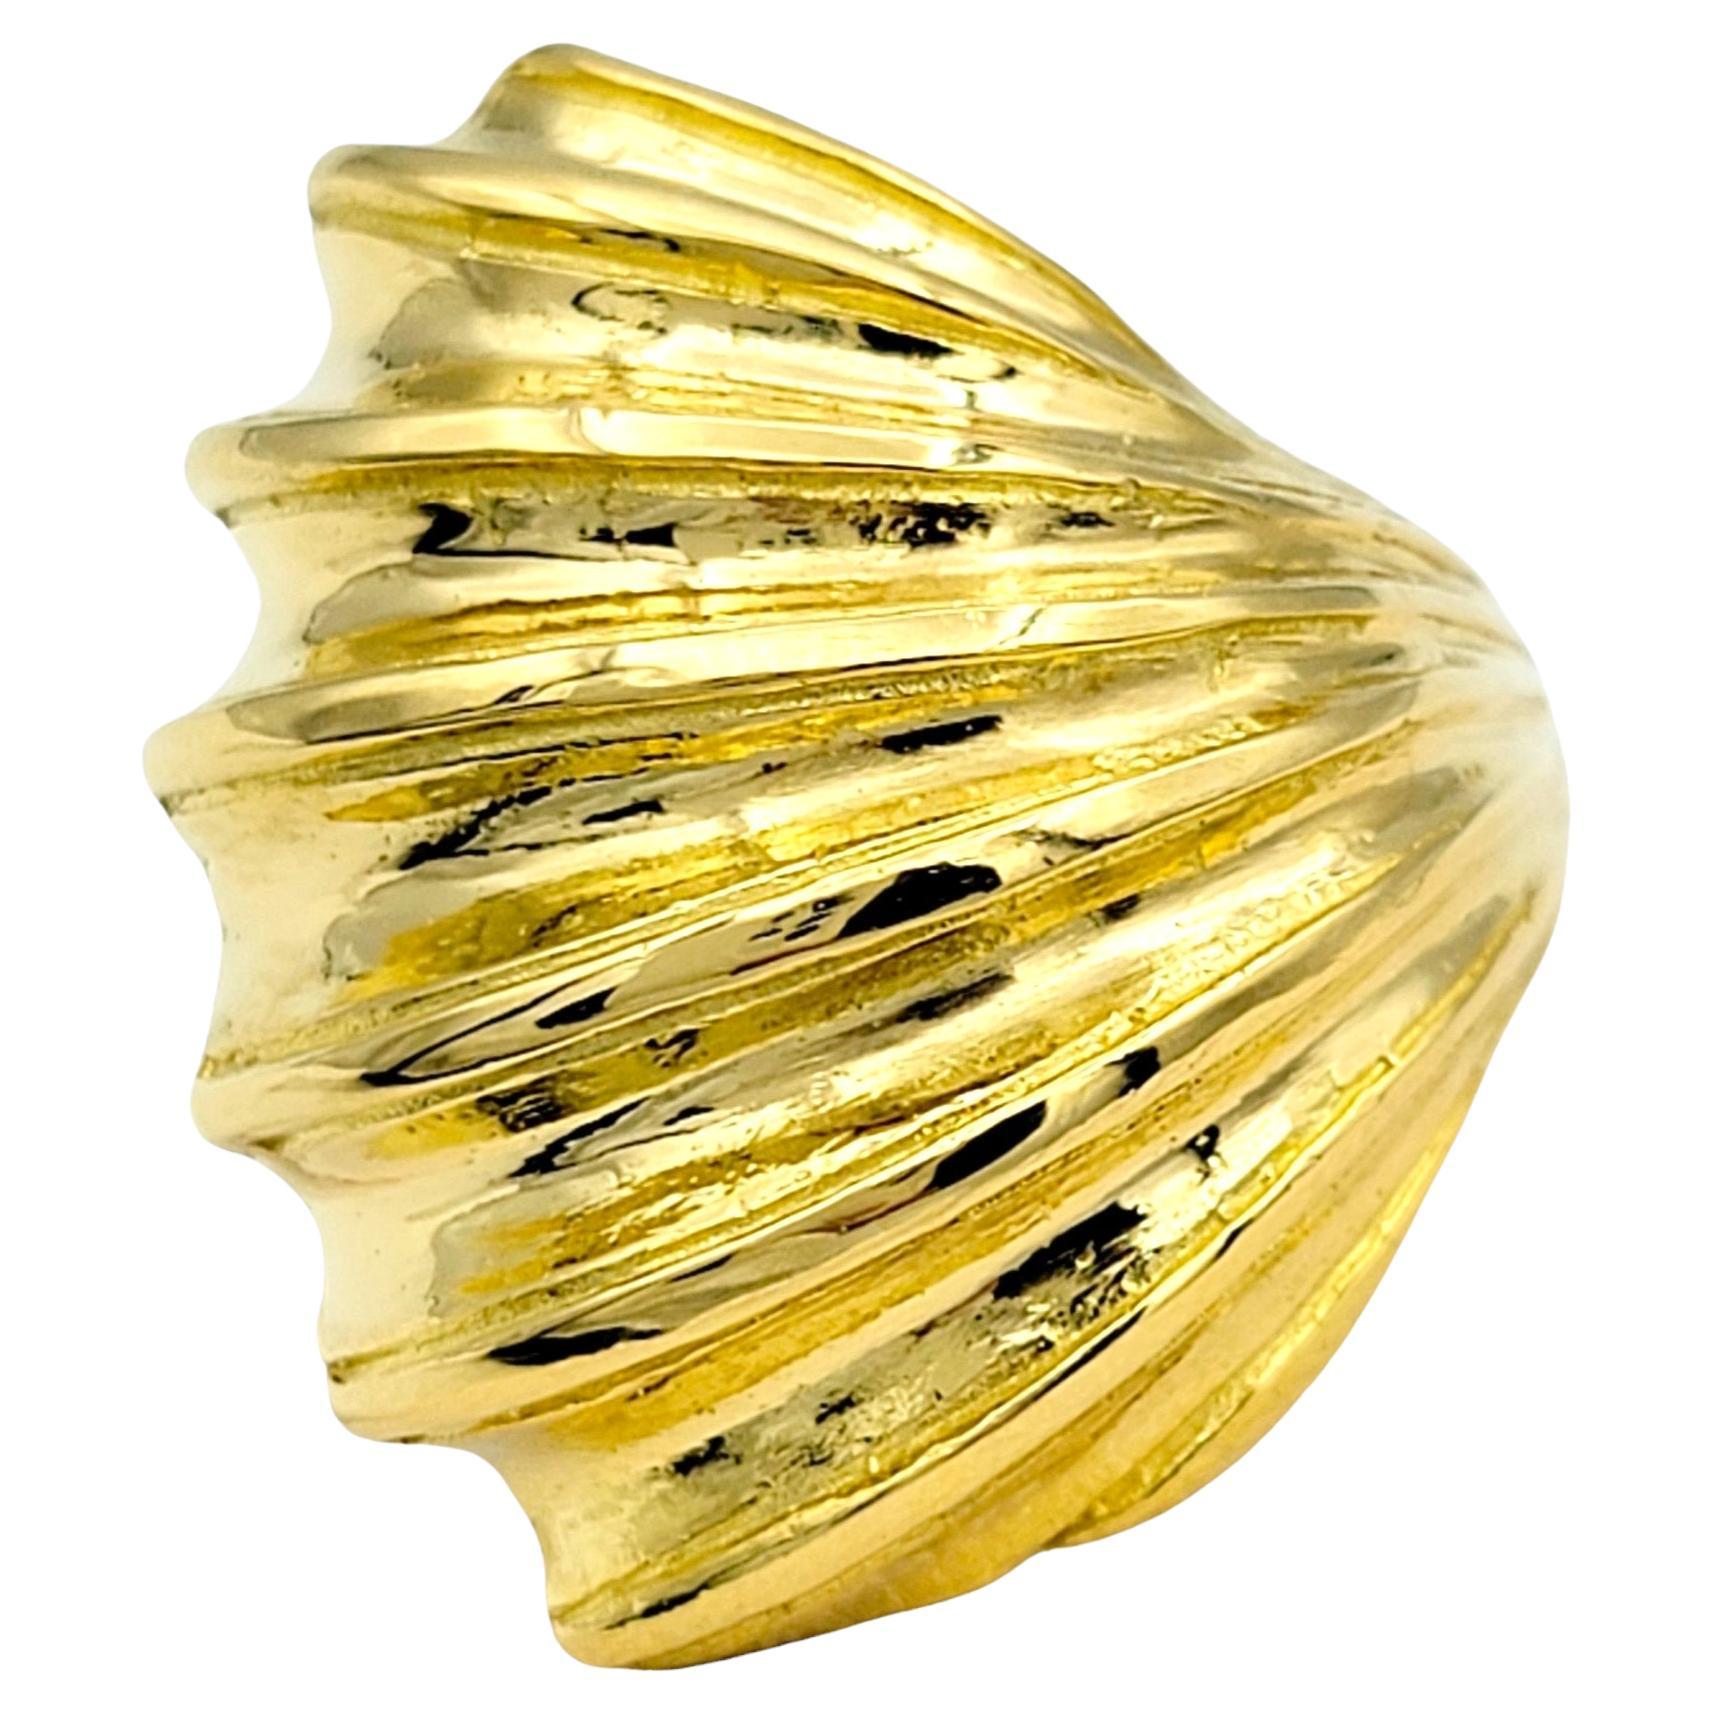 Taille de l'anneau : 5.25

Cette magnifique bague en or jaune 22 carats d'Ilias Lalaounis, ornée de coquillages, est un bijou magnifique qui capture l'essence de la beauté de la nature. Inspirée par les motifs et les textures complexes des